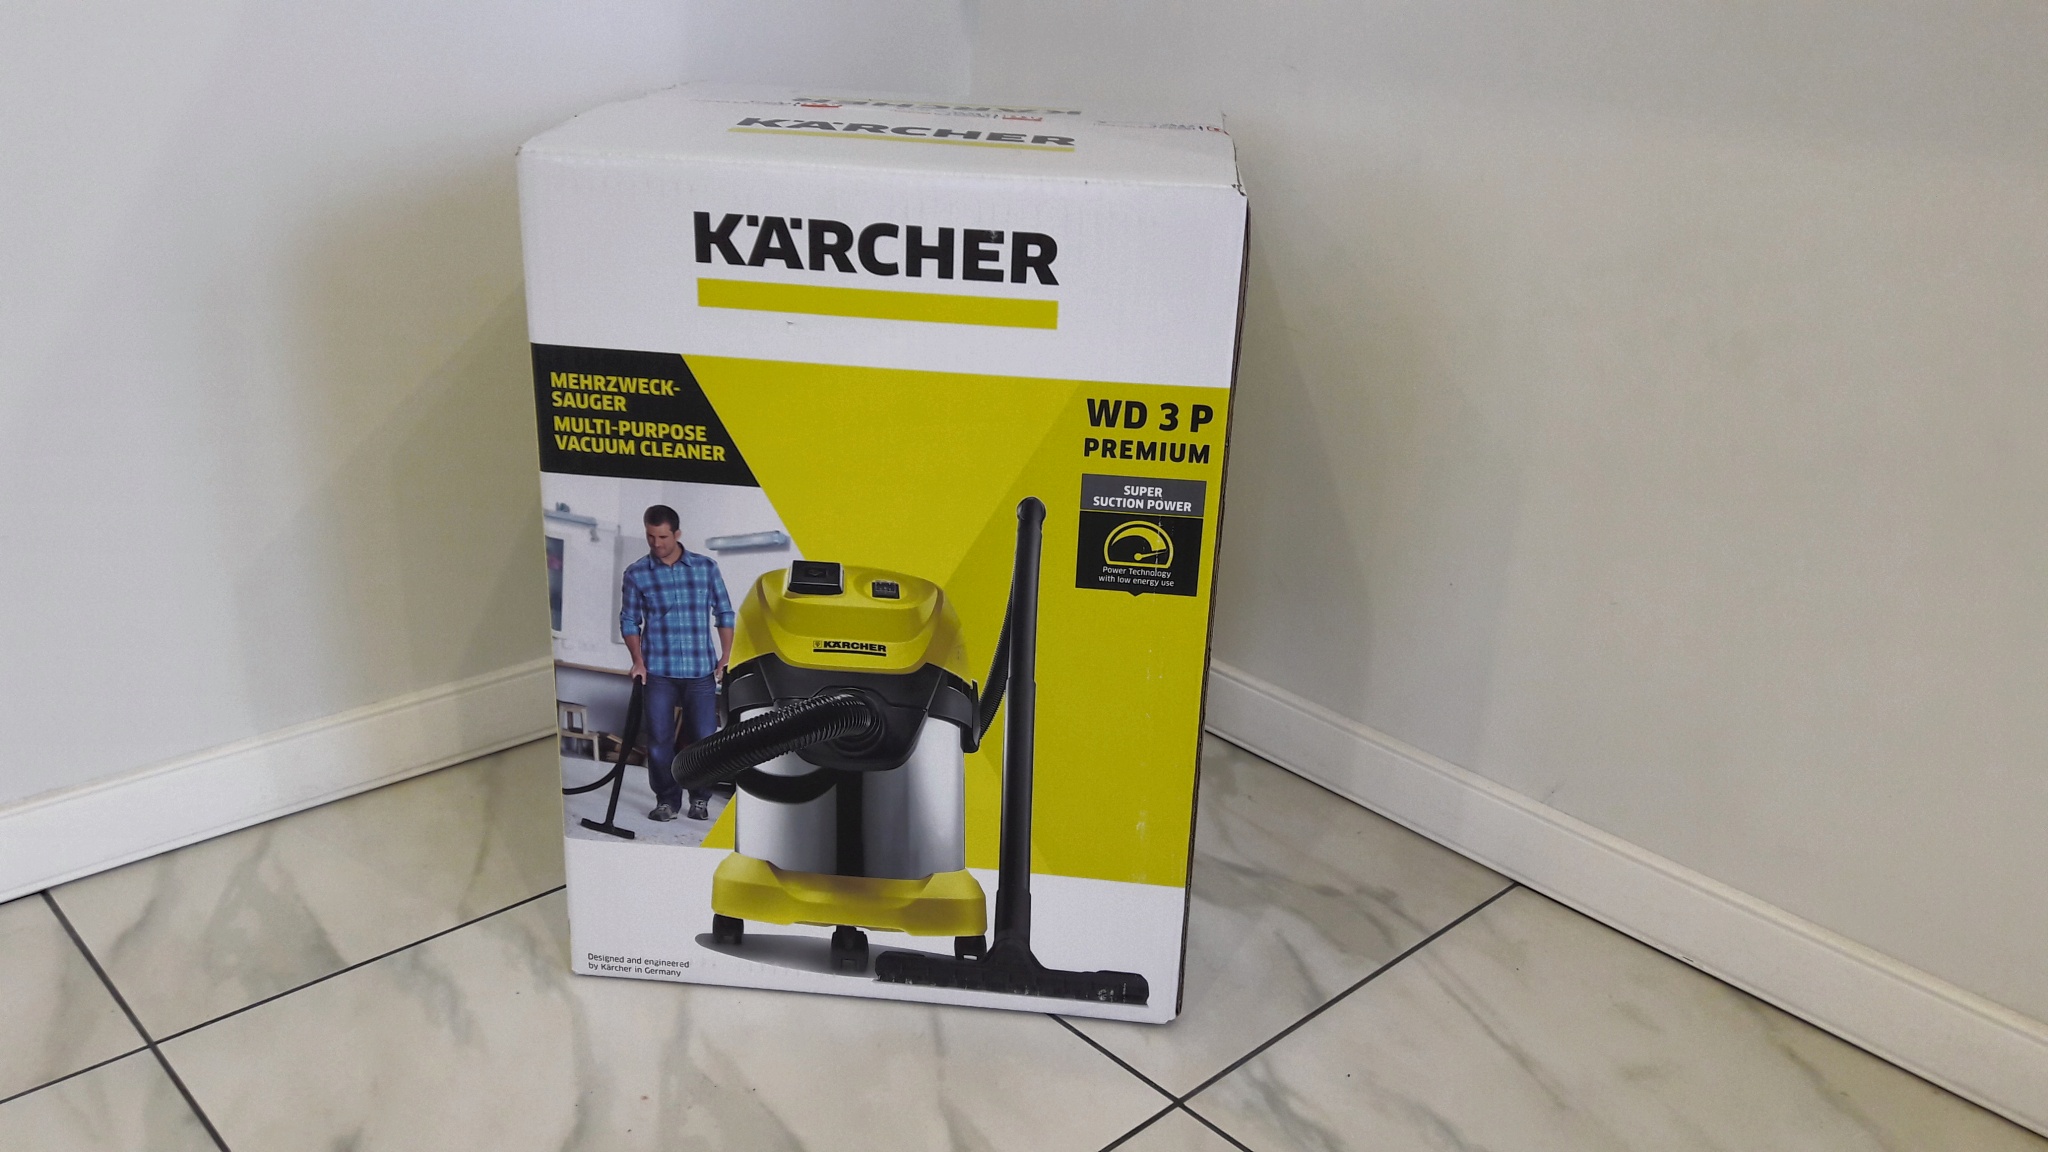 Karcher wd 3 p 1000. Karcher WD 3p комплектация. Karcher WD 3 P Premium. Karcher wd3 p Premium габариты. Karcher WD 3 P Premium аксессуары.